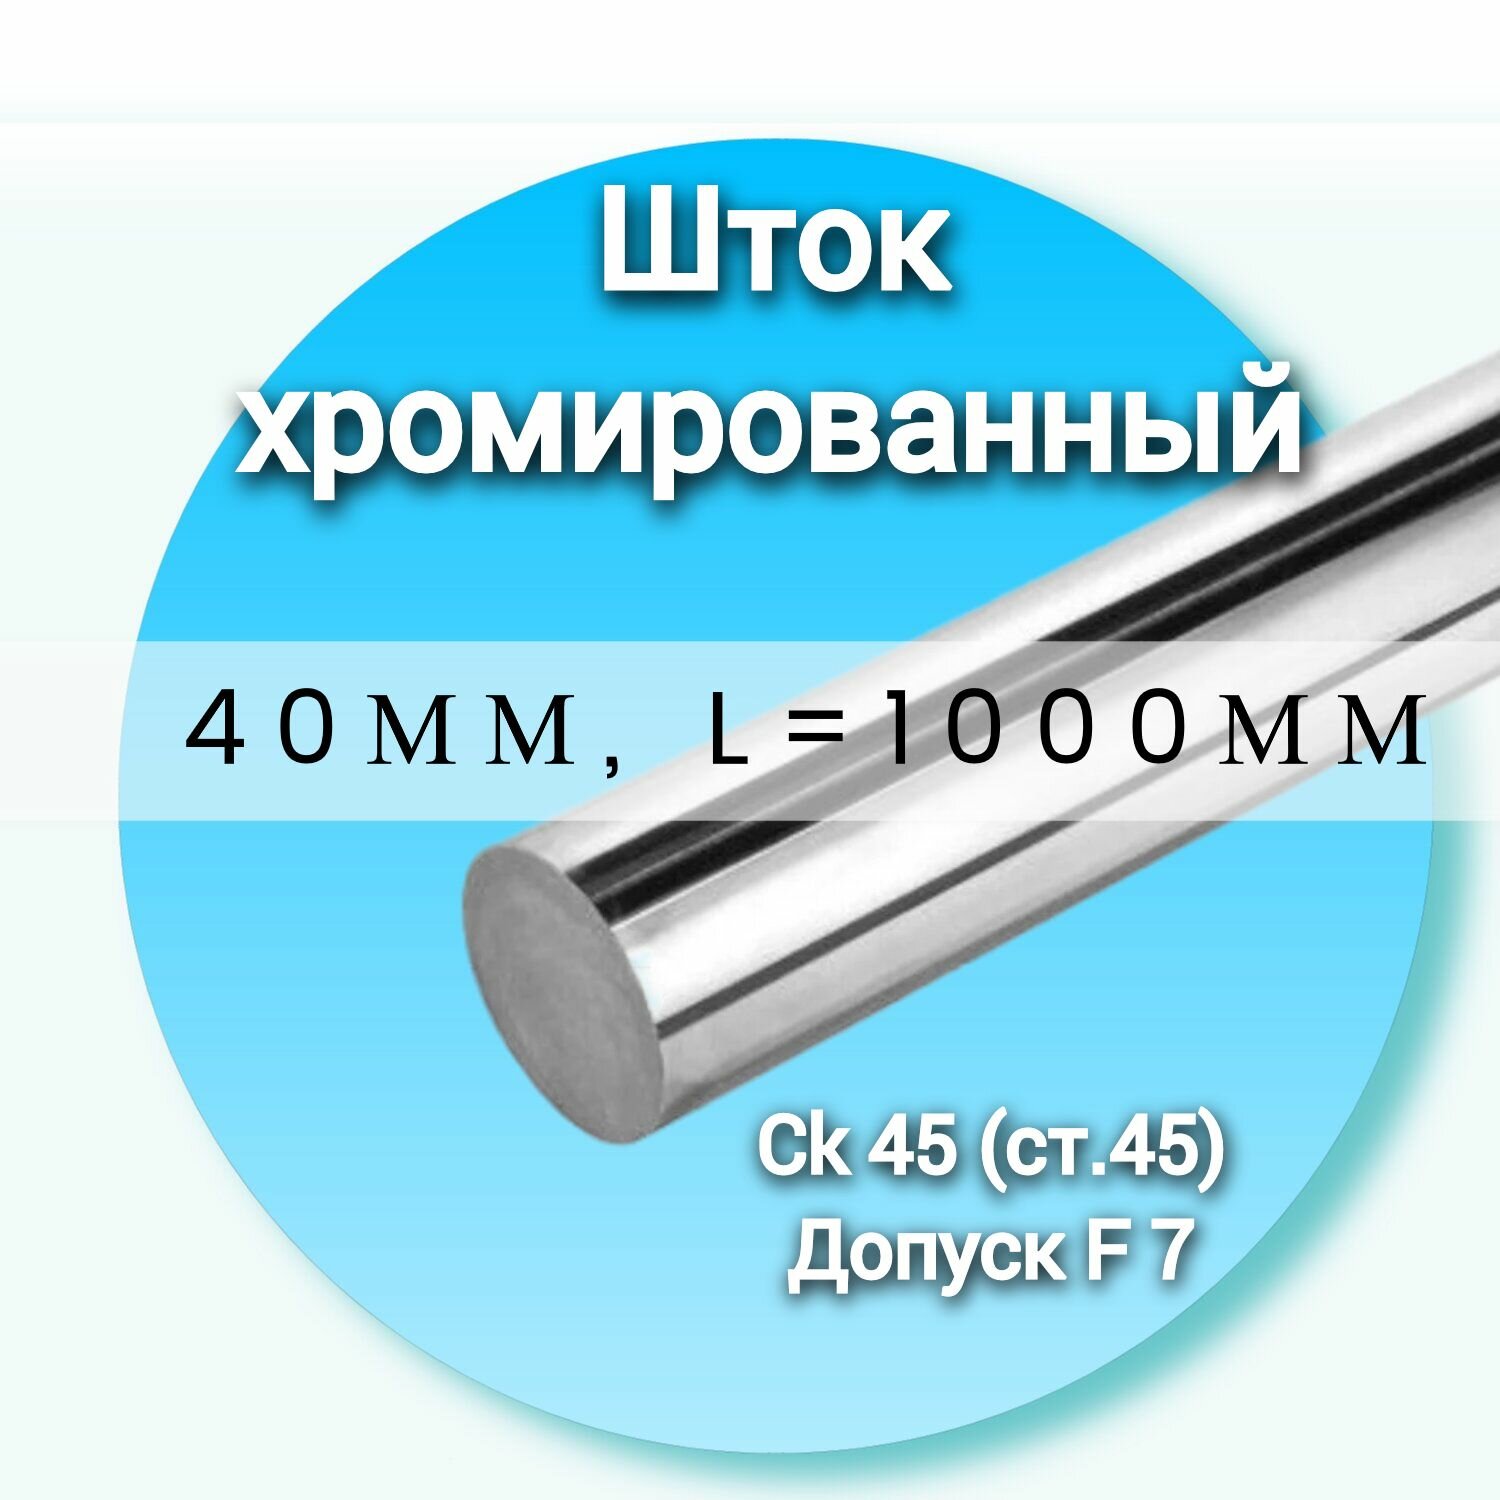 Шток хромированный СК45 f7 40*1000мм / Шток гидроцилиндра 40мм